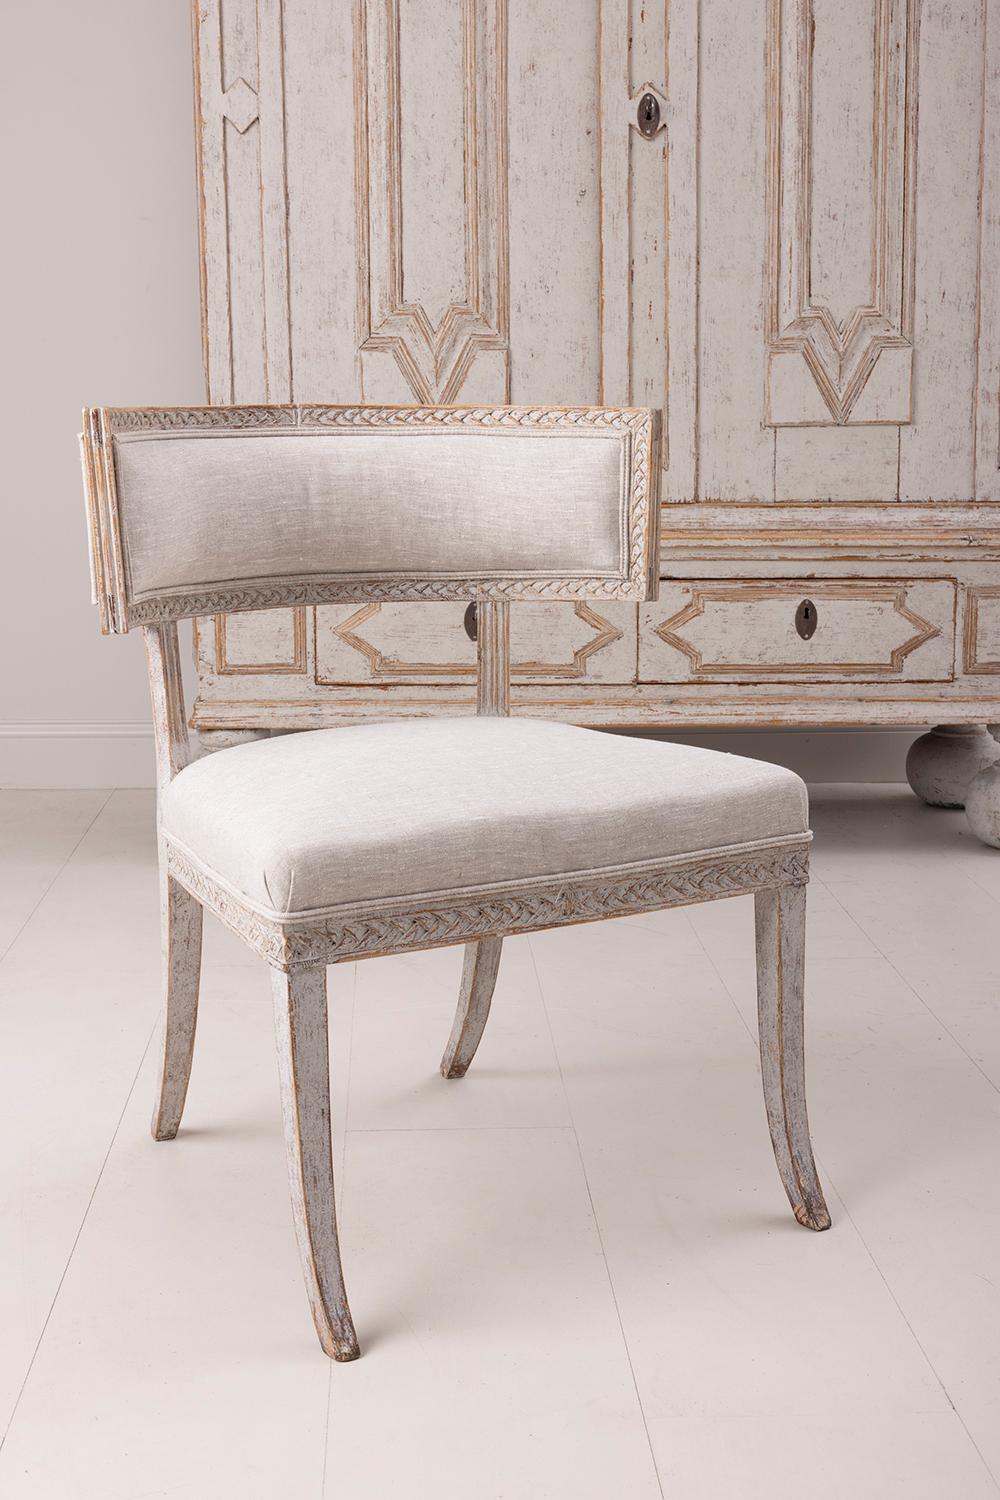 Ein Klismos-Stuhl aus dem frühen 19. Jahrhundert aus der Gustavianischen Periode, neu gepolstert mit Leinenstoff. Hergestellt in Lindome, Schweden. Das Klismos-Design hat seinen Ursprung im antiken Griechenland. Das Modell zeichnet sich durch seine